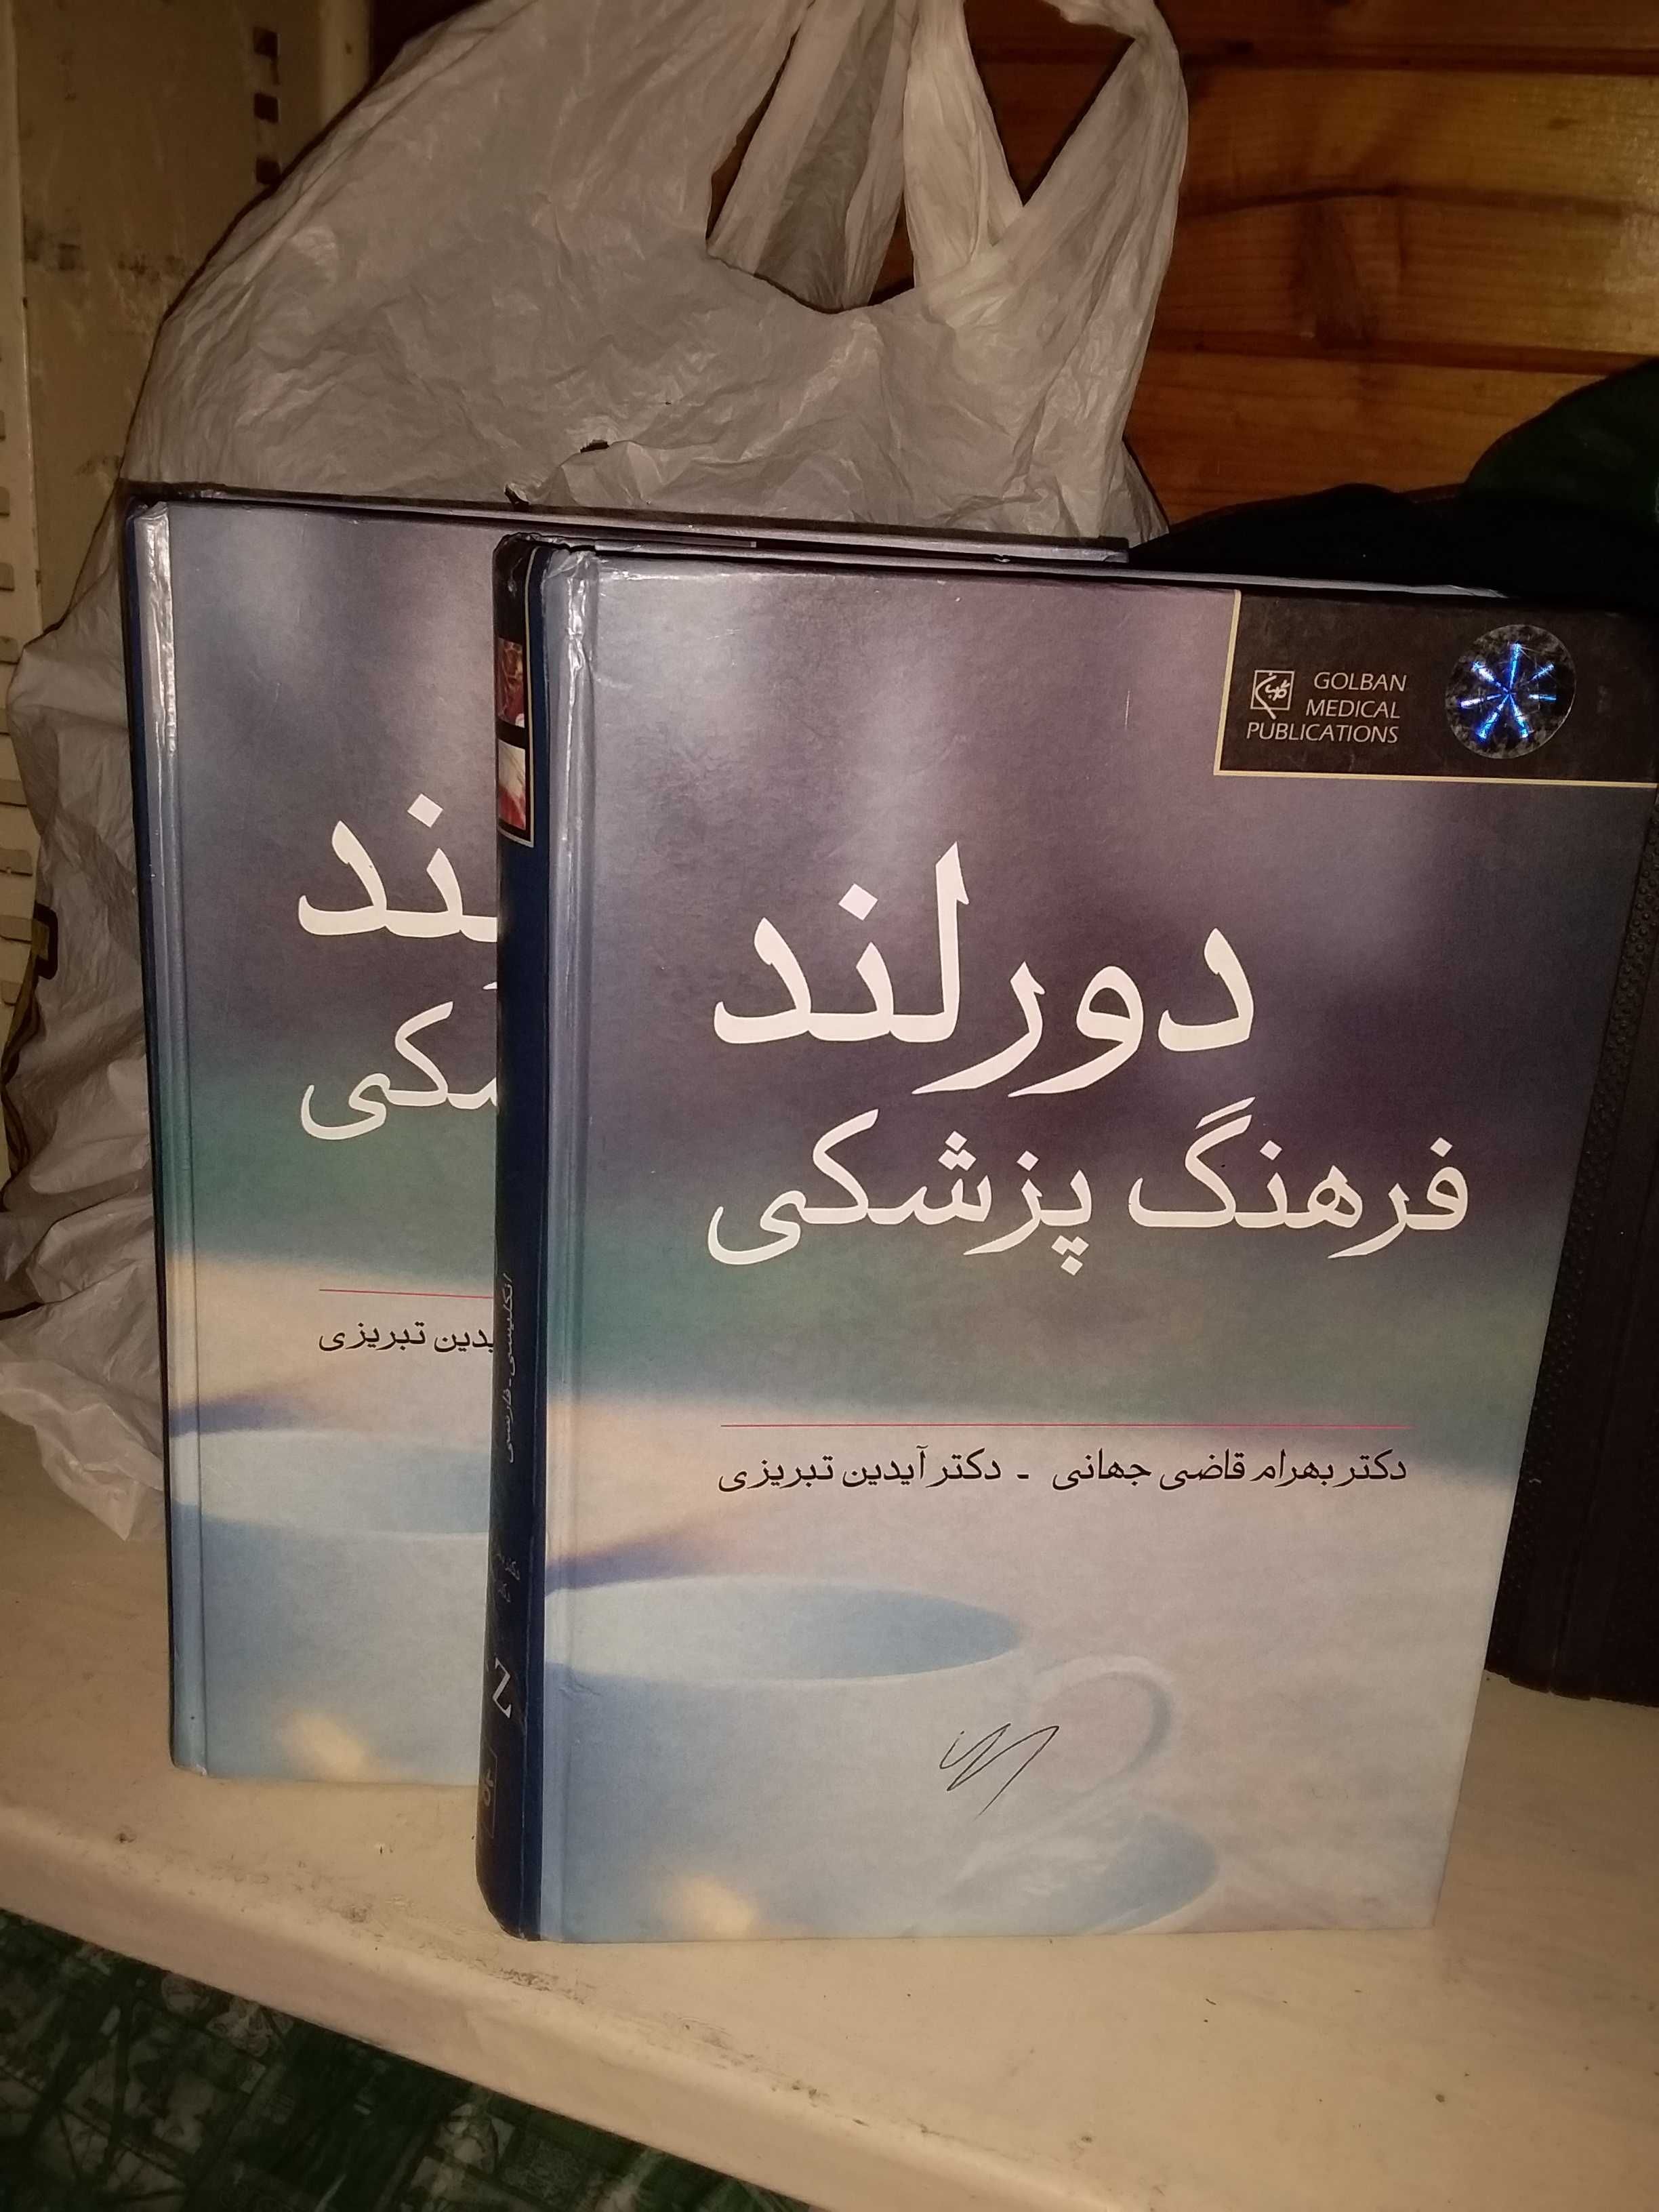 Продам редчайший англо-персидский МЕДИЦИНСКИЙ словарь.